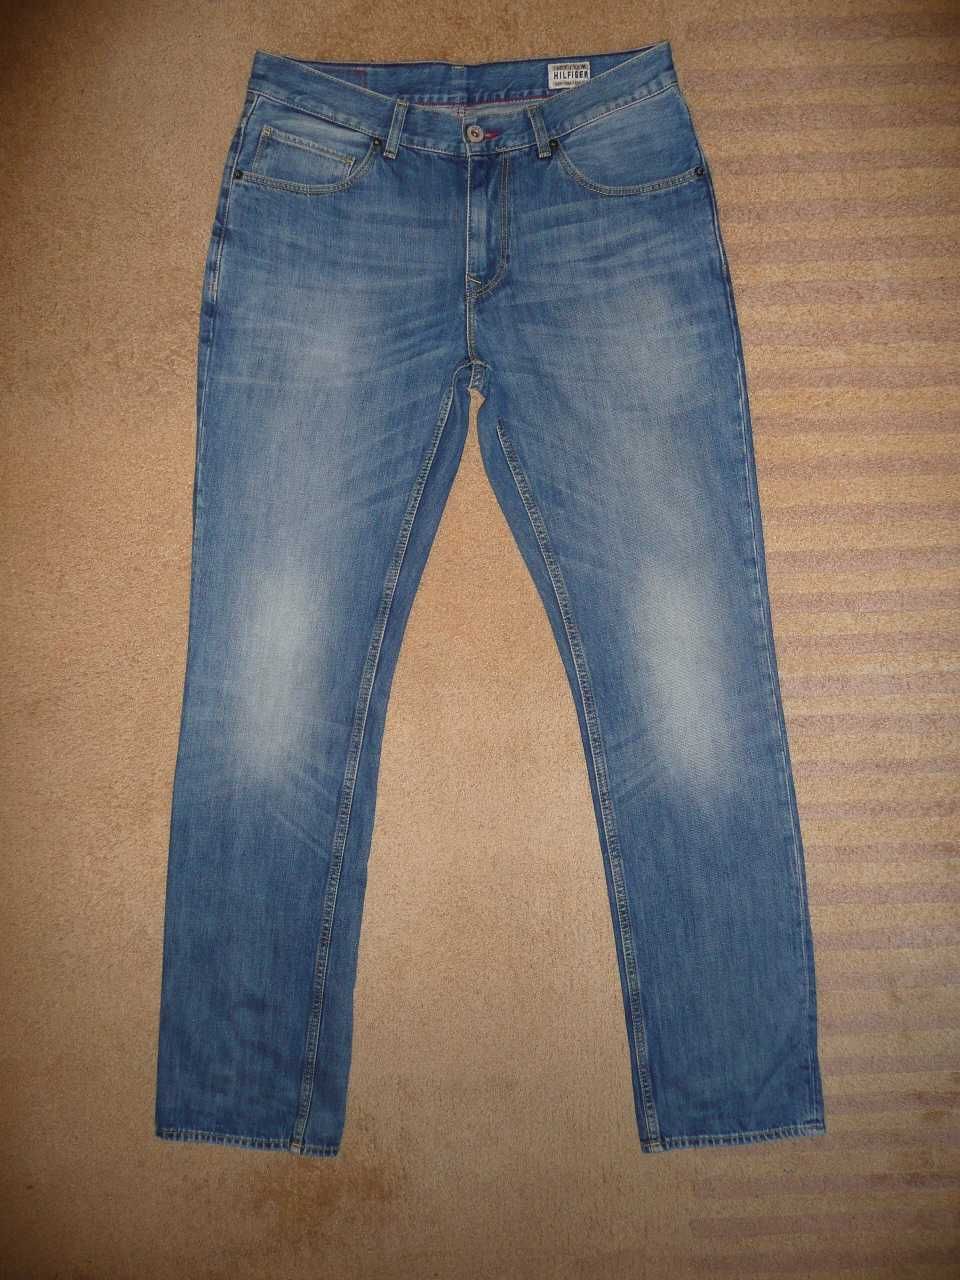 Spodnie dżinsy TOMMY HILFIGER W33/L34=44/114cm jeansy